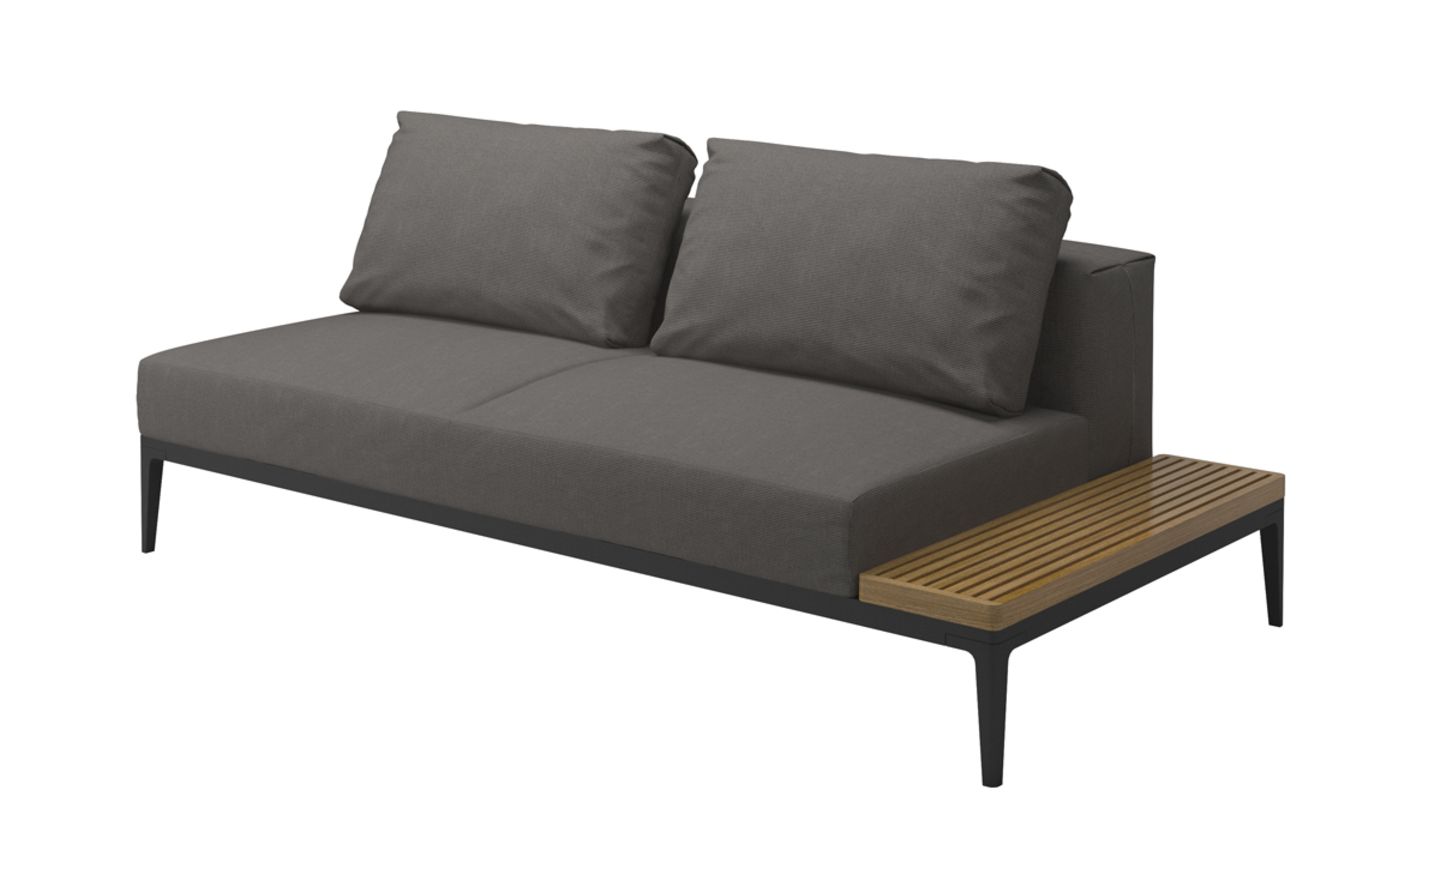 Outdoor-Sofa "The Grid" von Gloster